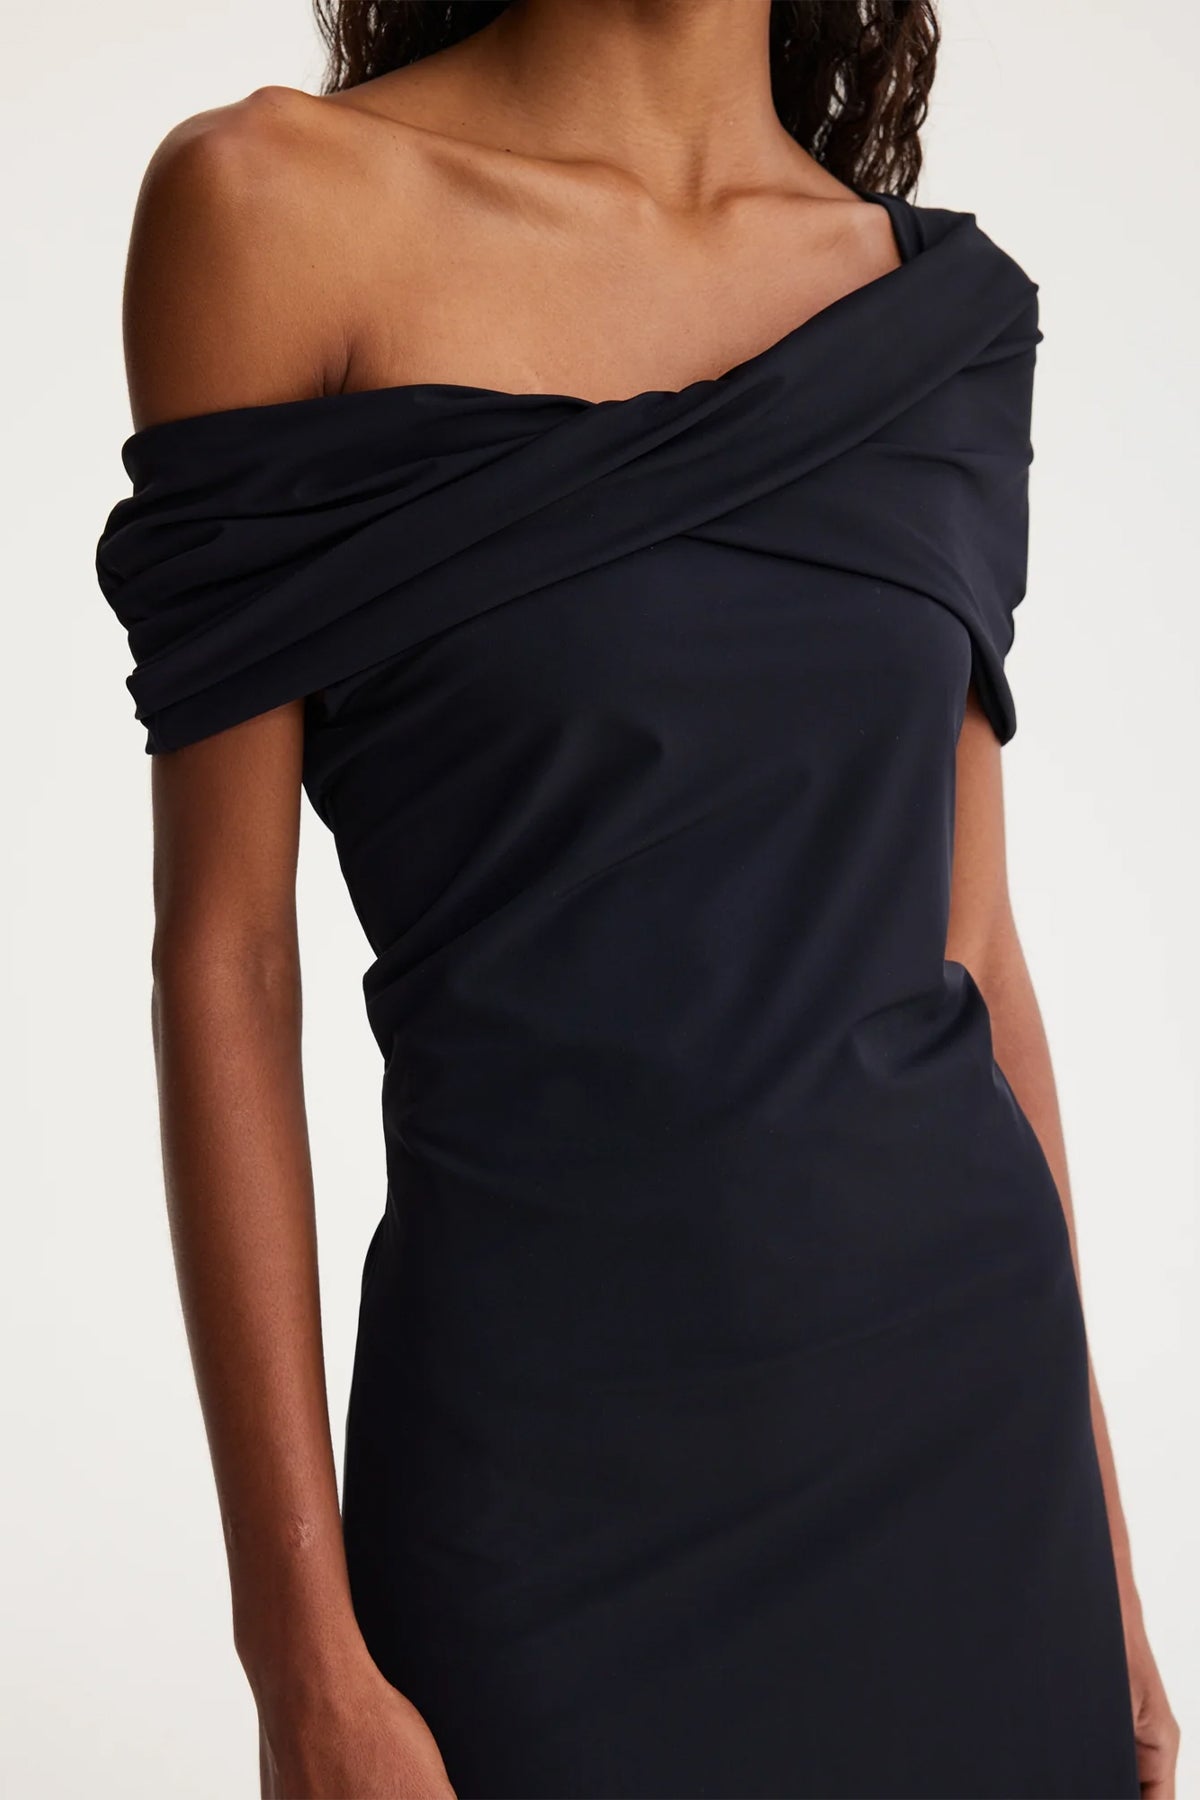 Asymmetrical Off Shoulder Dress in Noir - shop-olivia.com